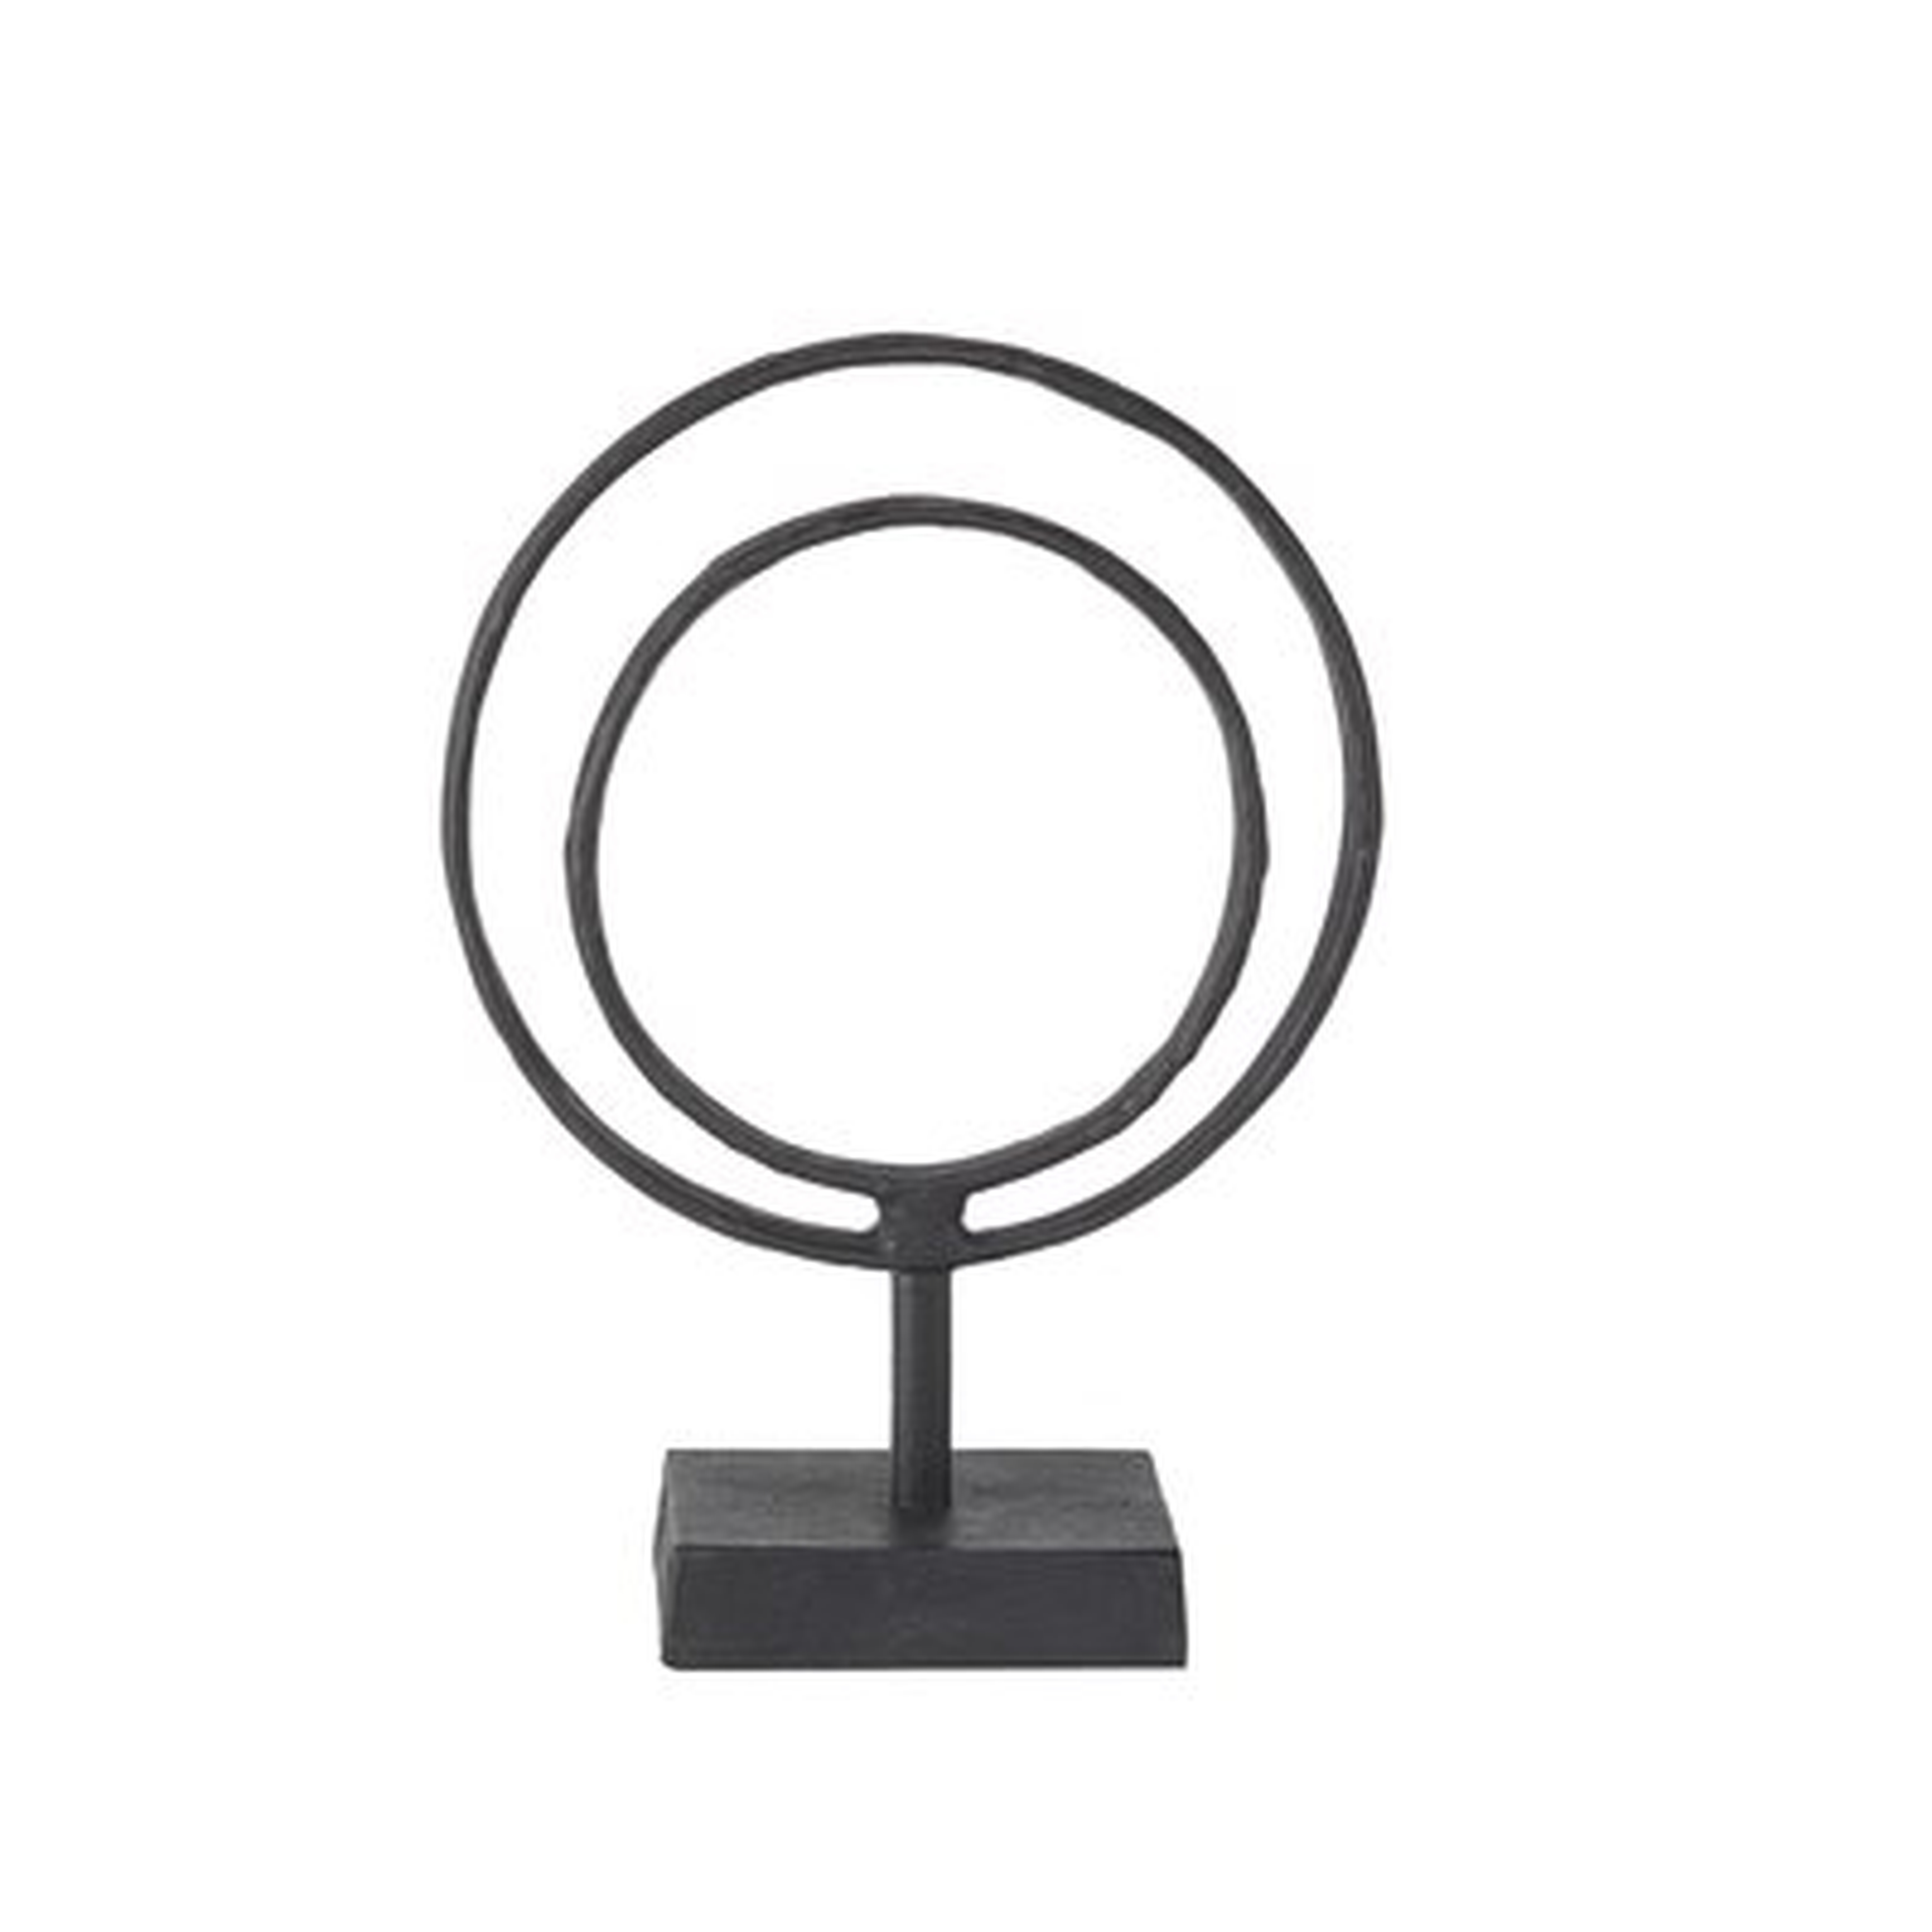 Gwendoline Ring Object Decor Sculpture - Birch Lane